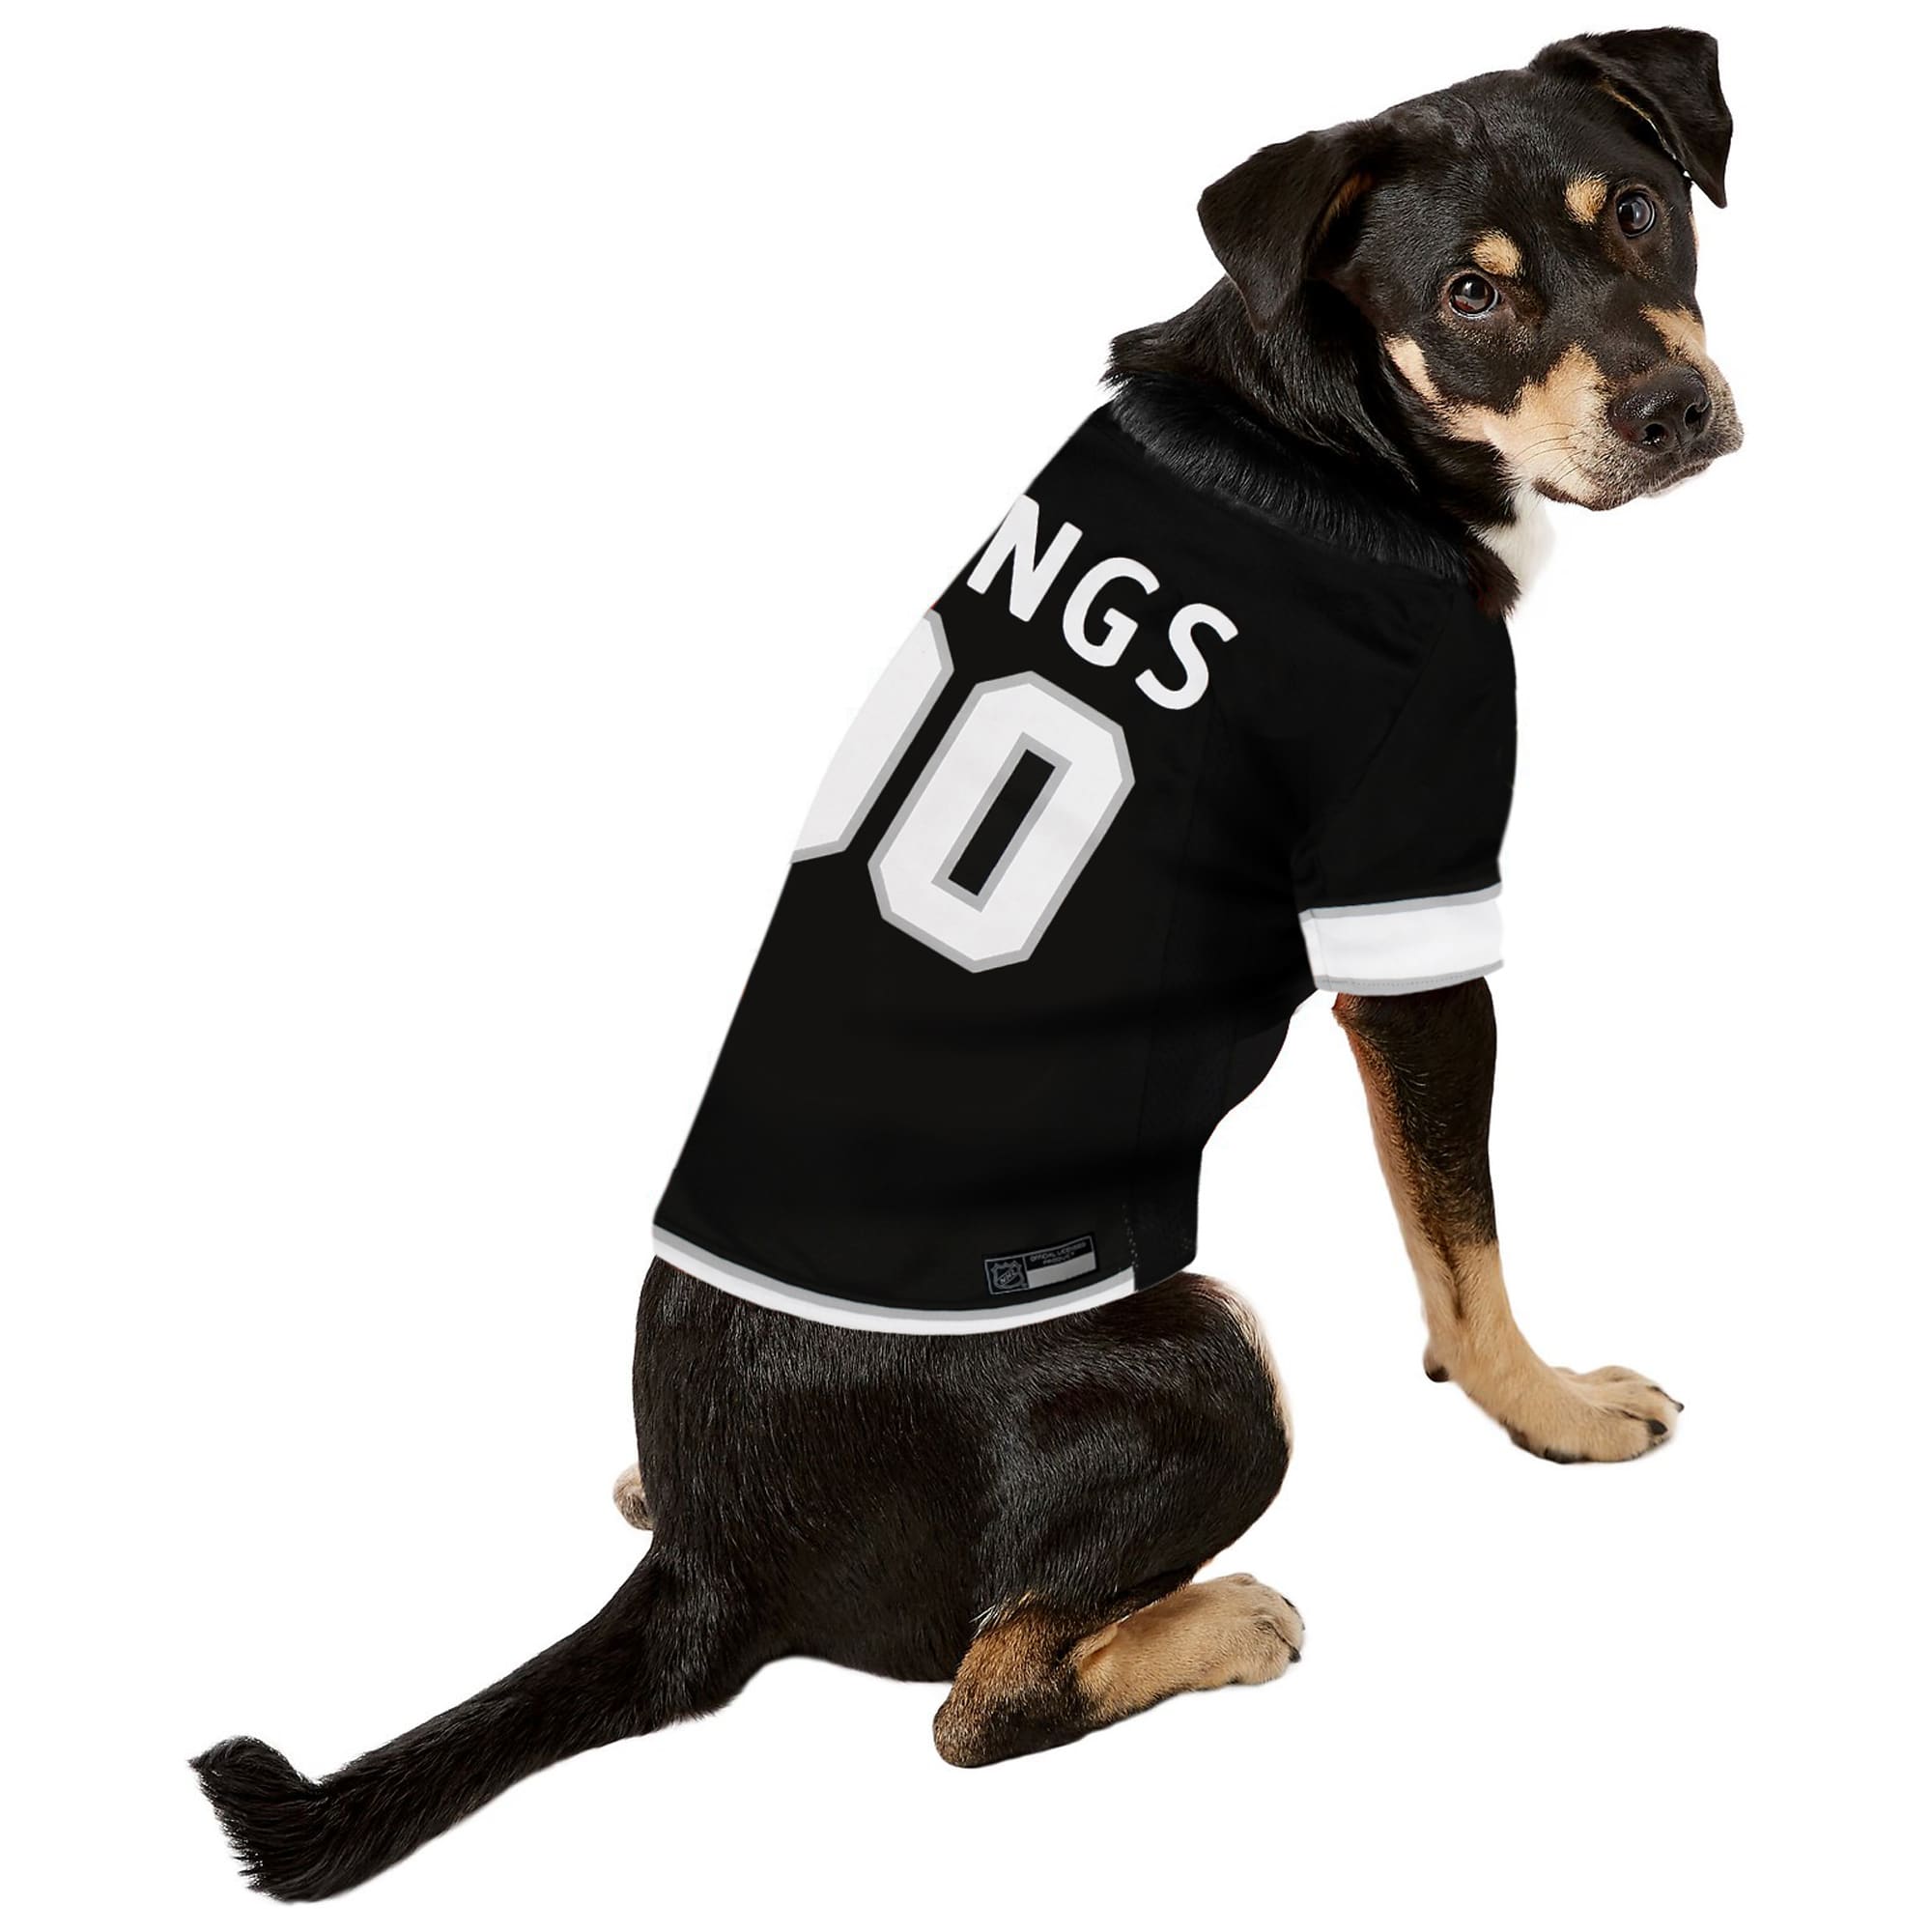 la kings dog jersey